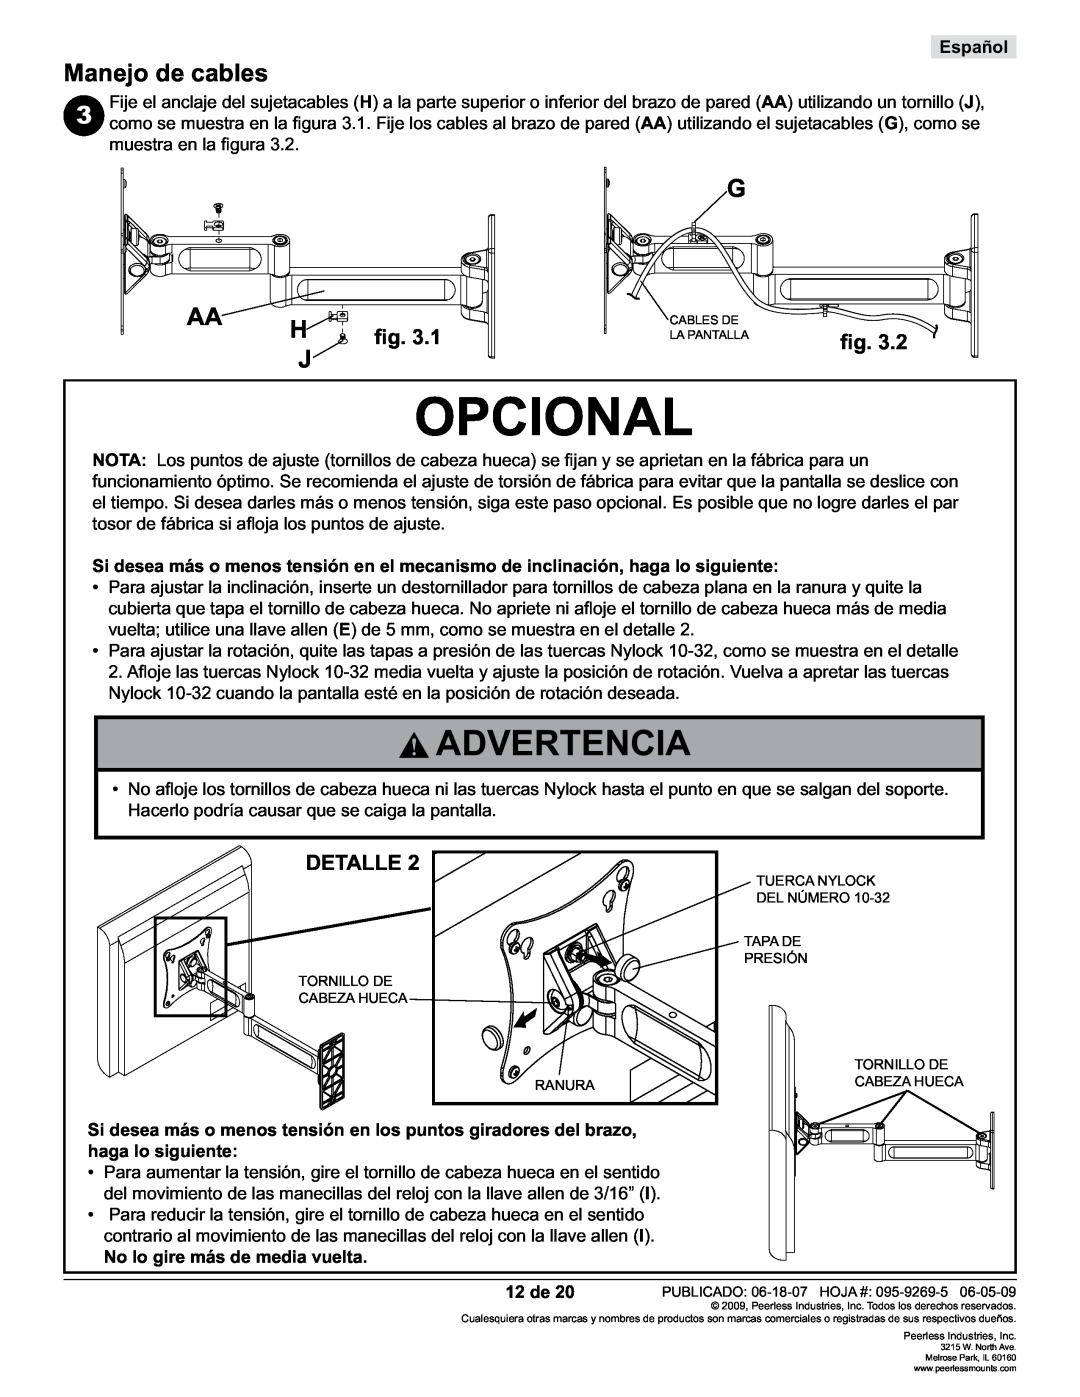 Peerless Industries PA730 Opcional, Manejo de cables, Detalle, No lo gire más de media vuelta, 12 de, Advertencia, Español 